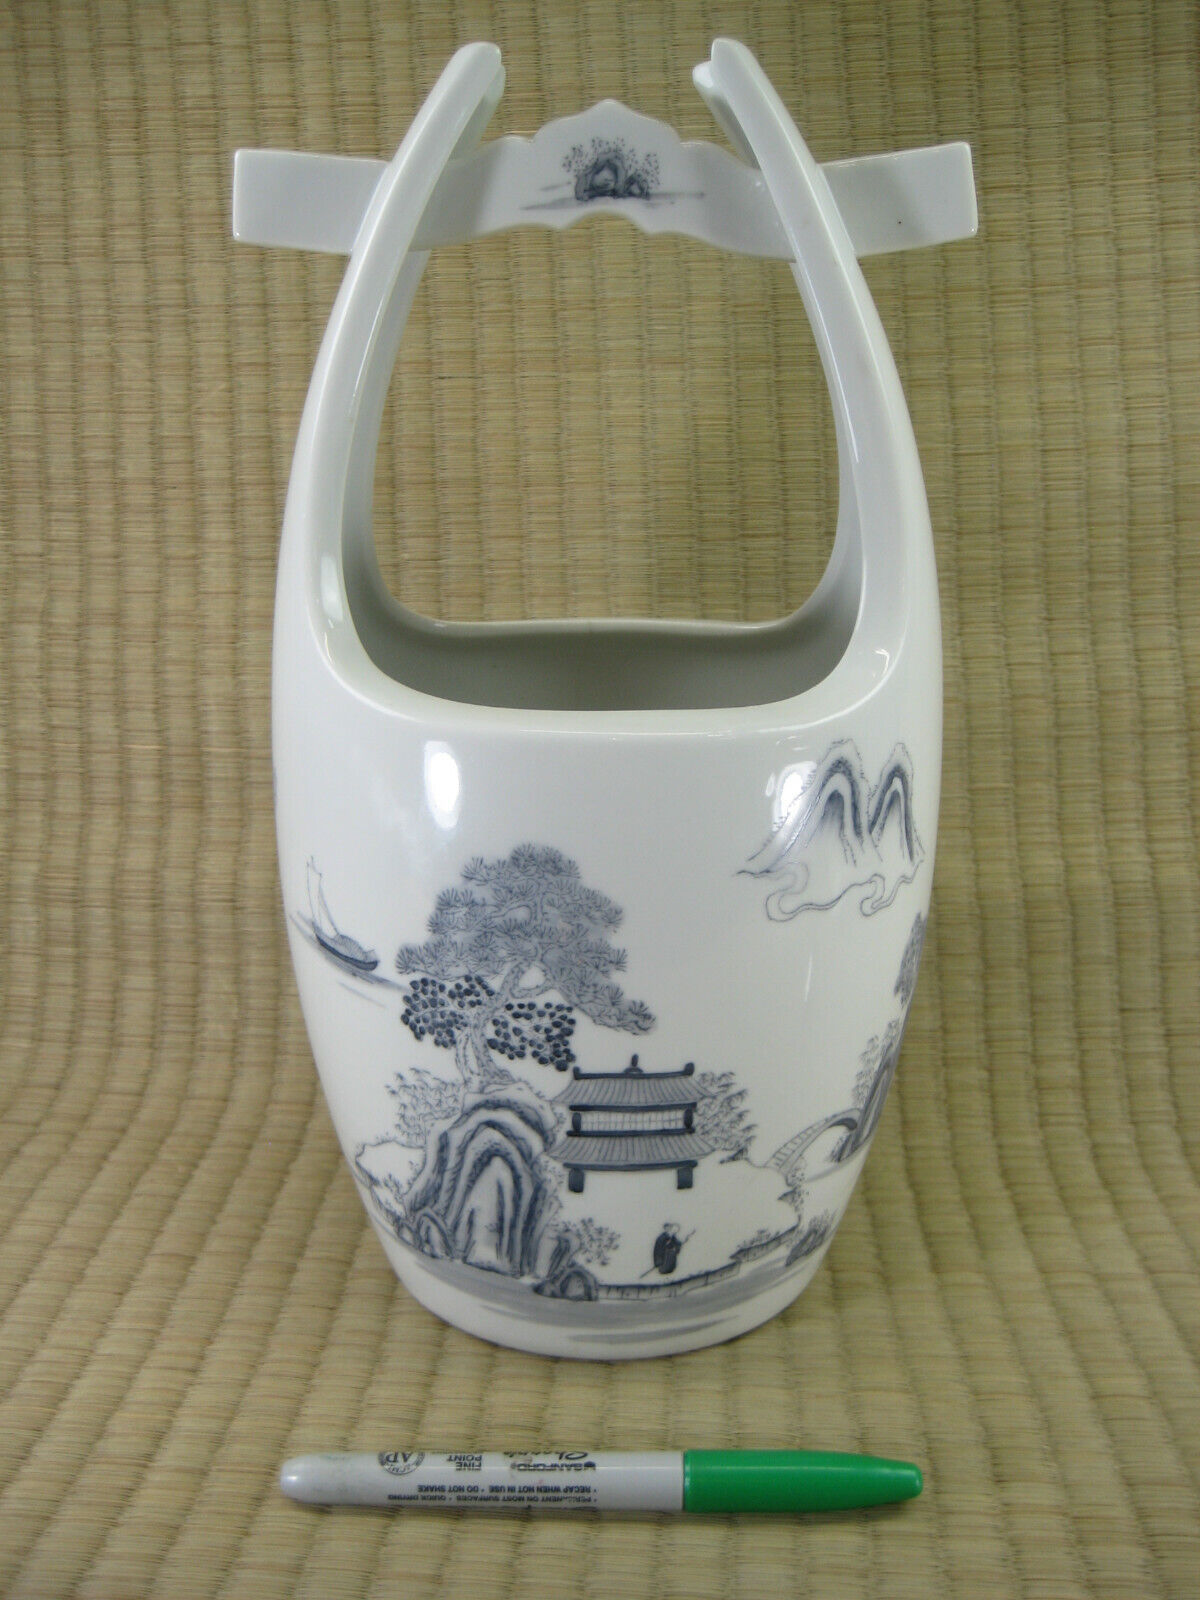 Chinese Decorative Imari White Porcelain Water Bucket Style Flower Vase